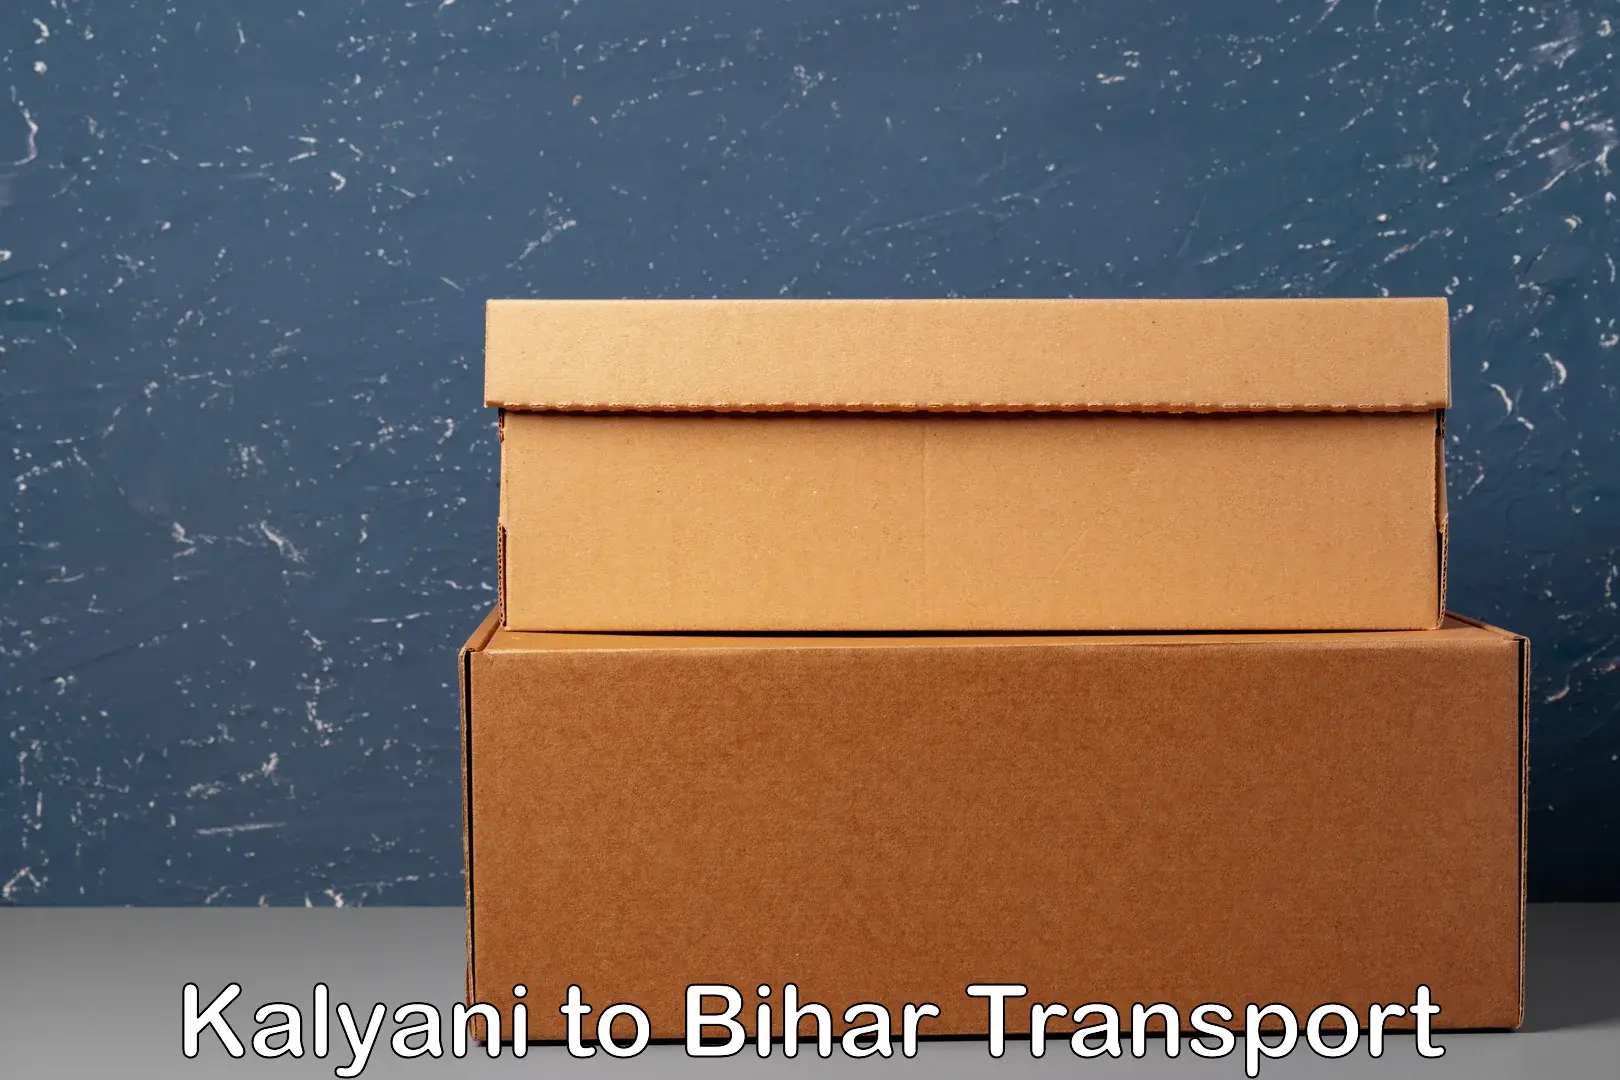 Pick up transport service Kalyani to Dehri